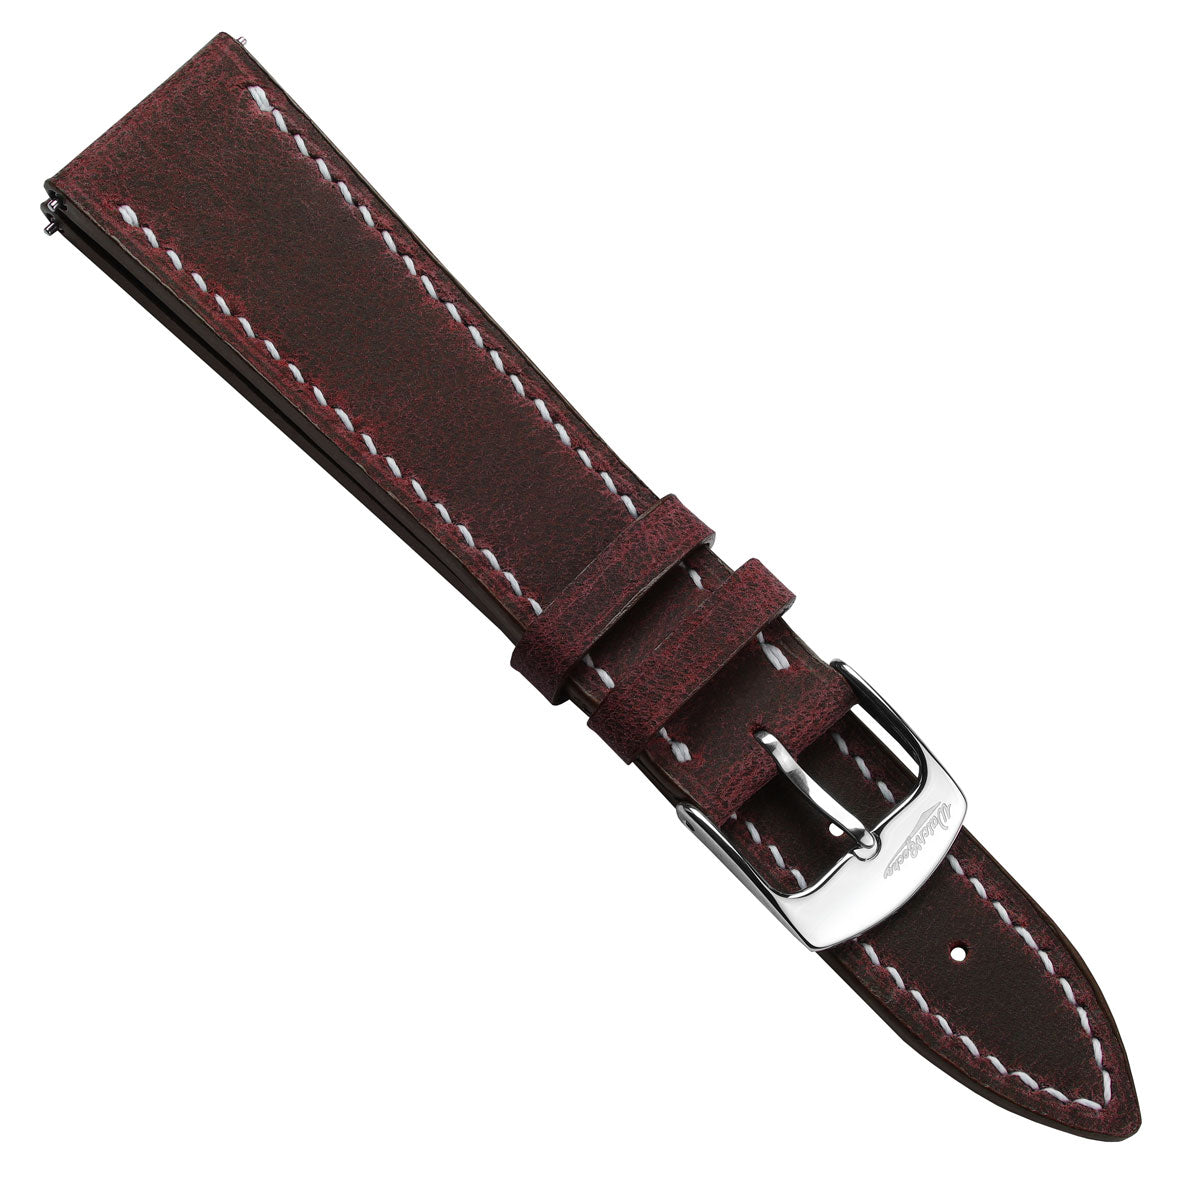 Hanley Crazy Horse Leather Watch Strap - Bordeaux